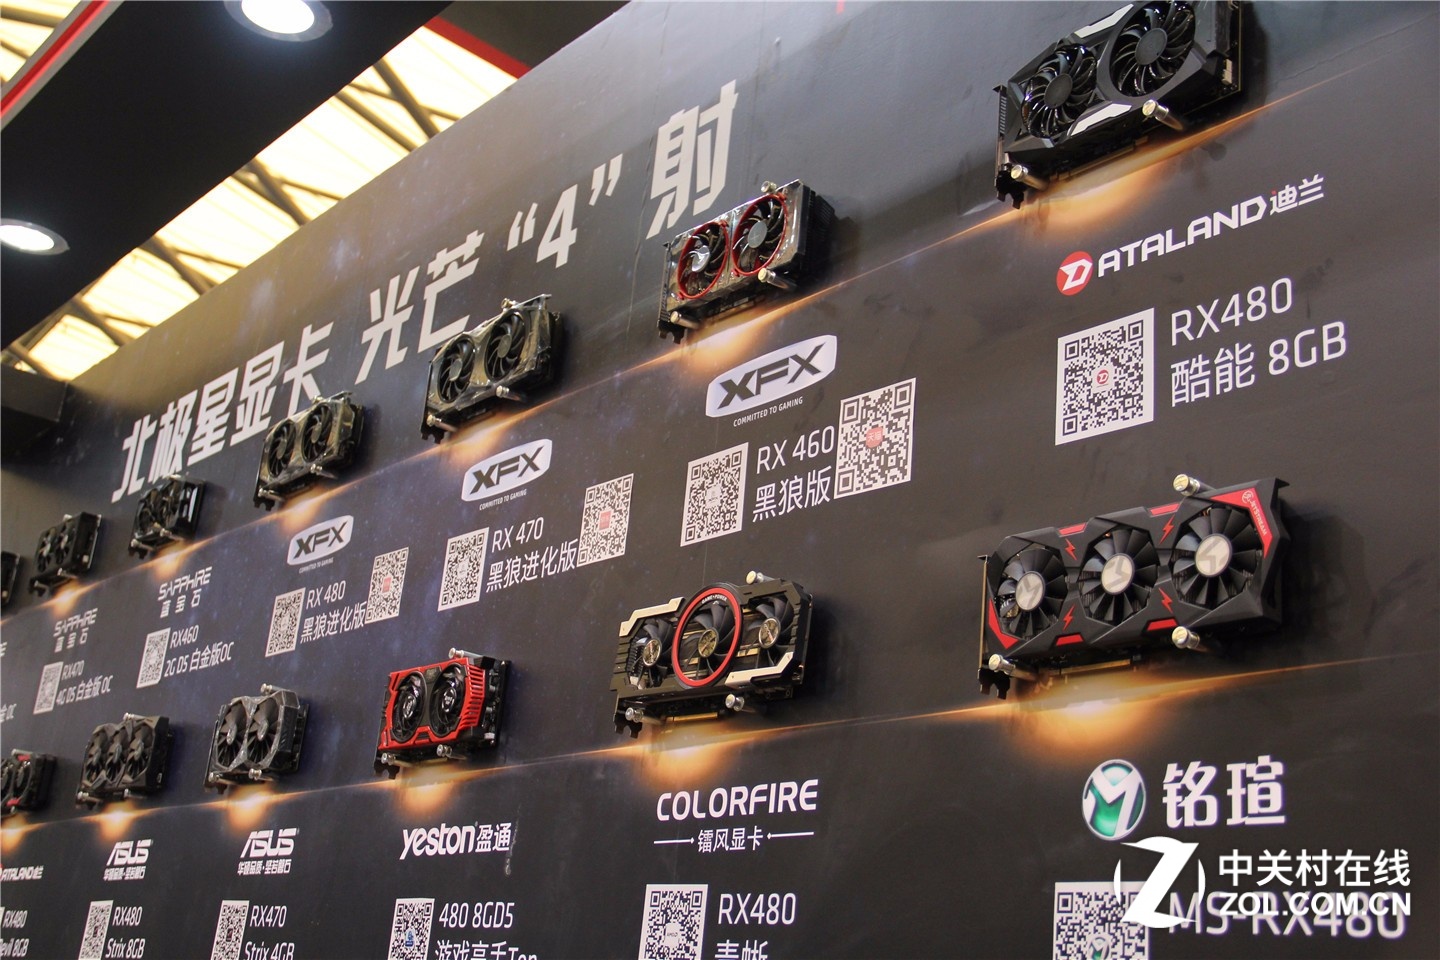  AMD Radeon RX 480,470,460 Özel Tasarımlar Duyuruldu